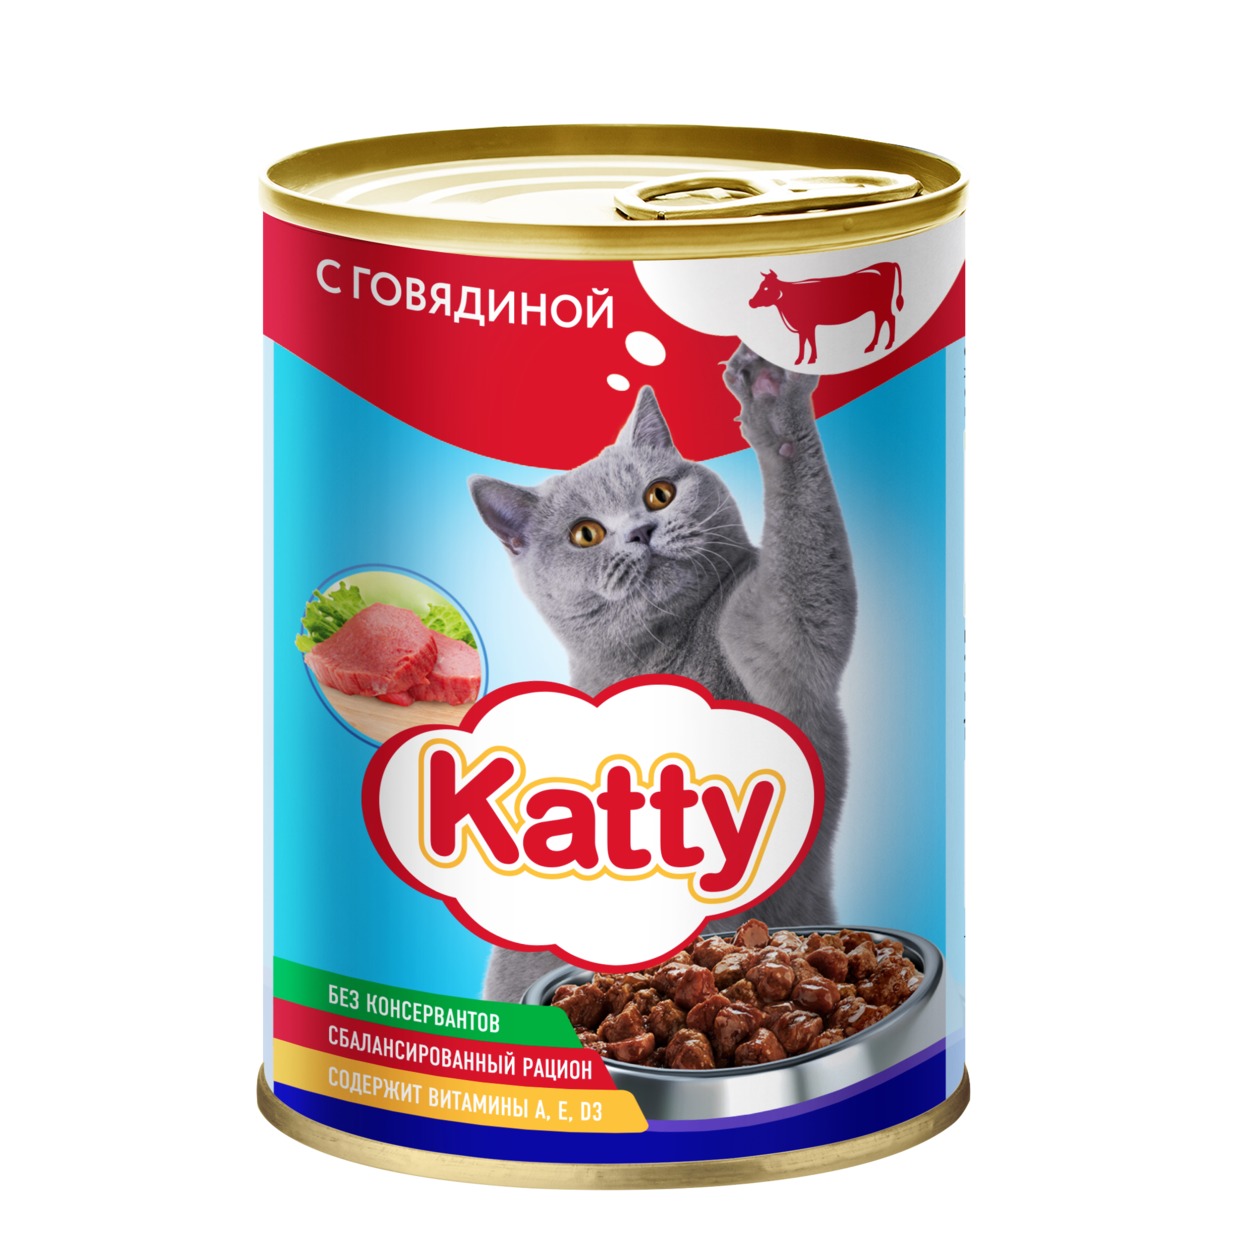 Katty Корм консервированный полнорационный для кошек с говядиной в соусе, ж/б 415 гр. по акции в Пятерочке